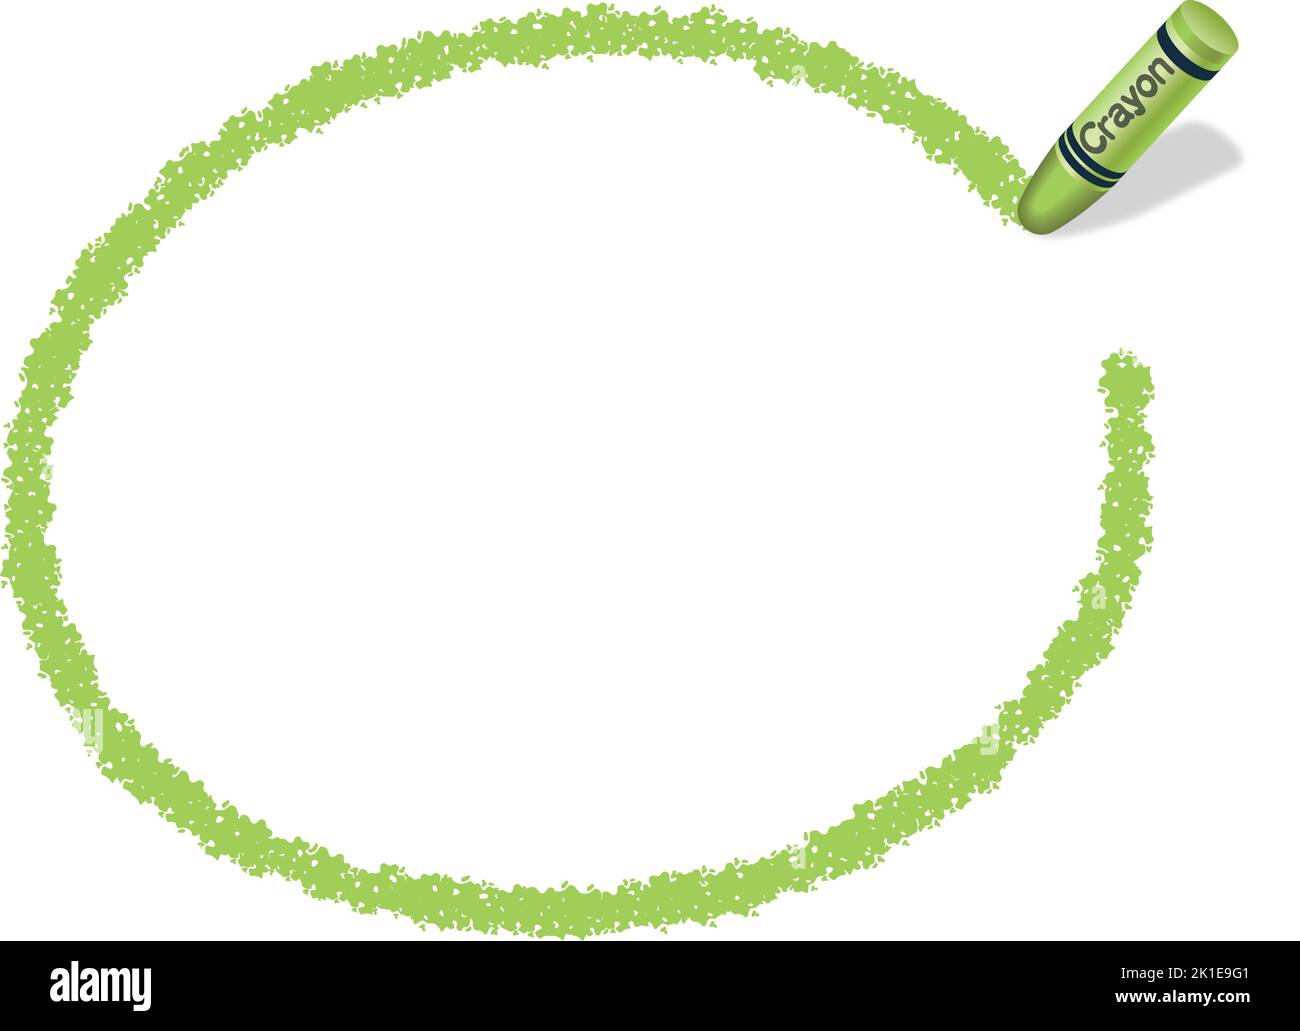 Vektor handgezeichneter grüner ovaler Crayon-Texturrahmen isoliert auf Weißem Hintergrund. Stock Vektor